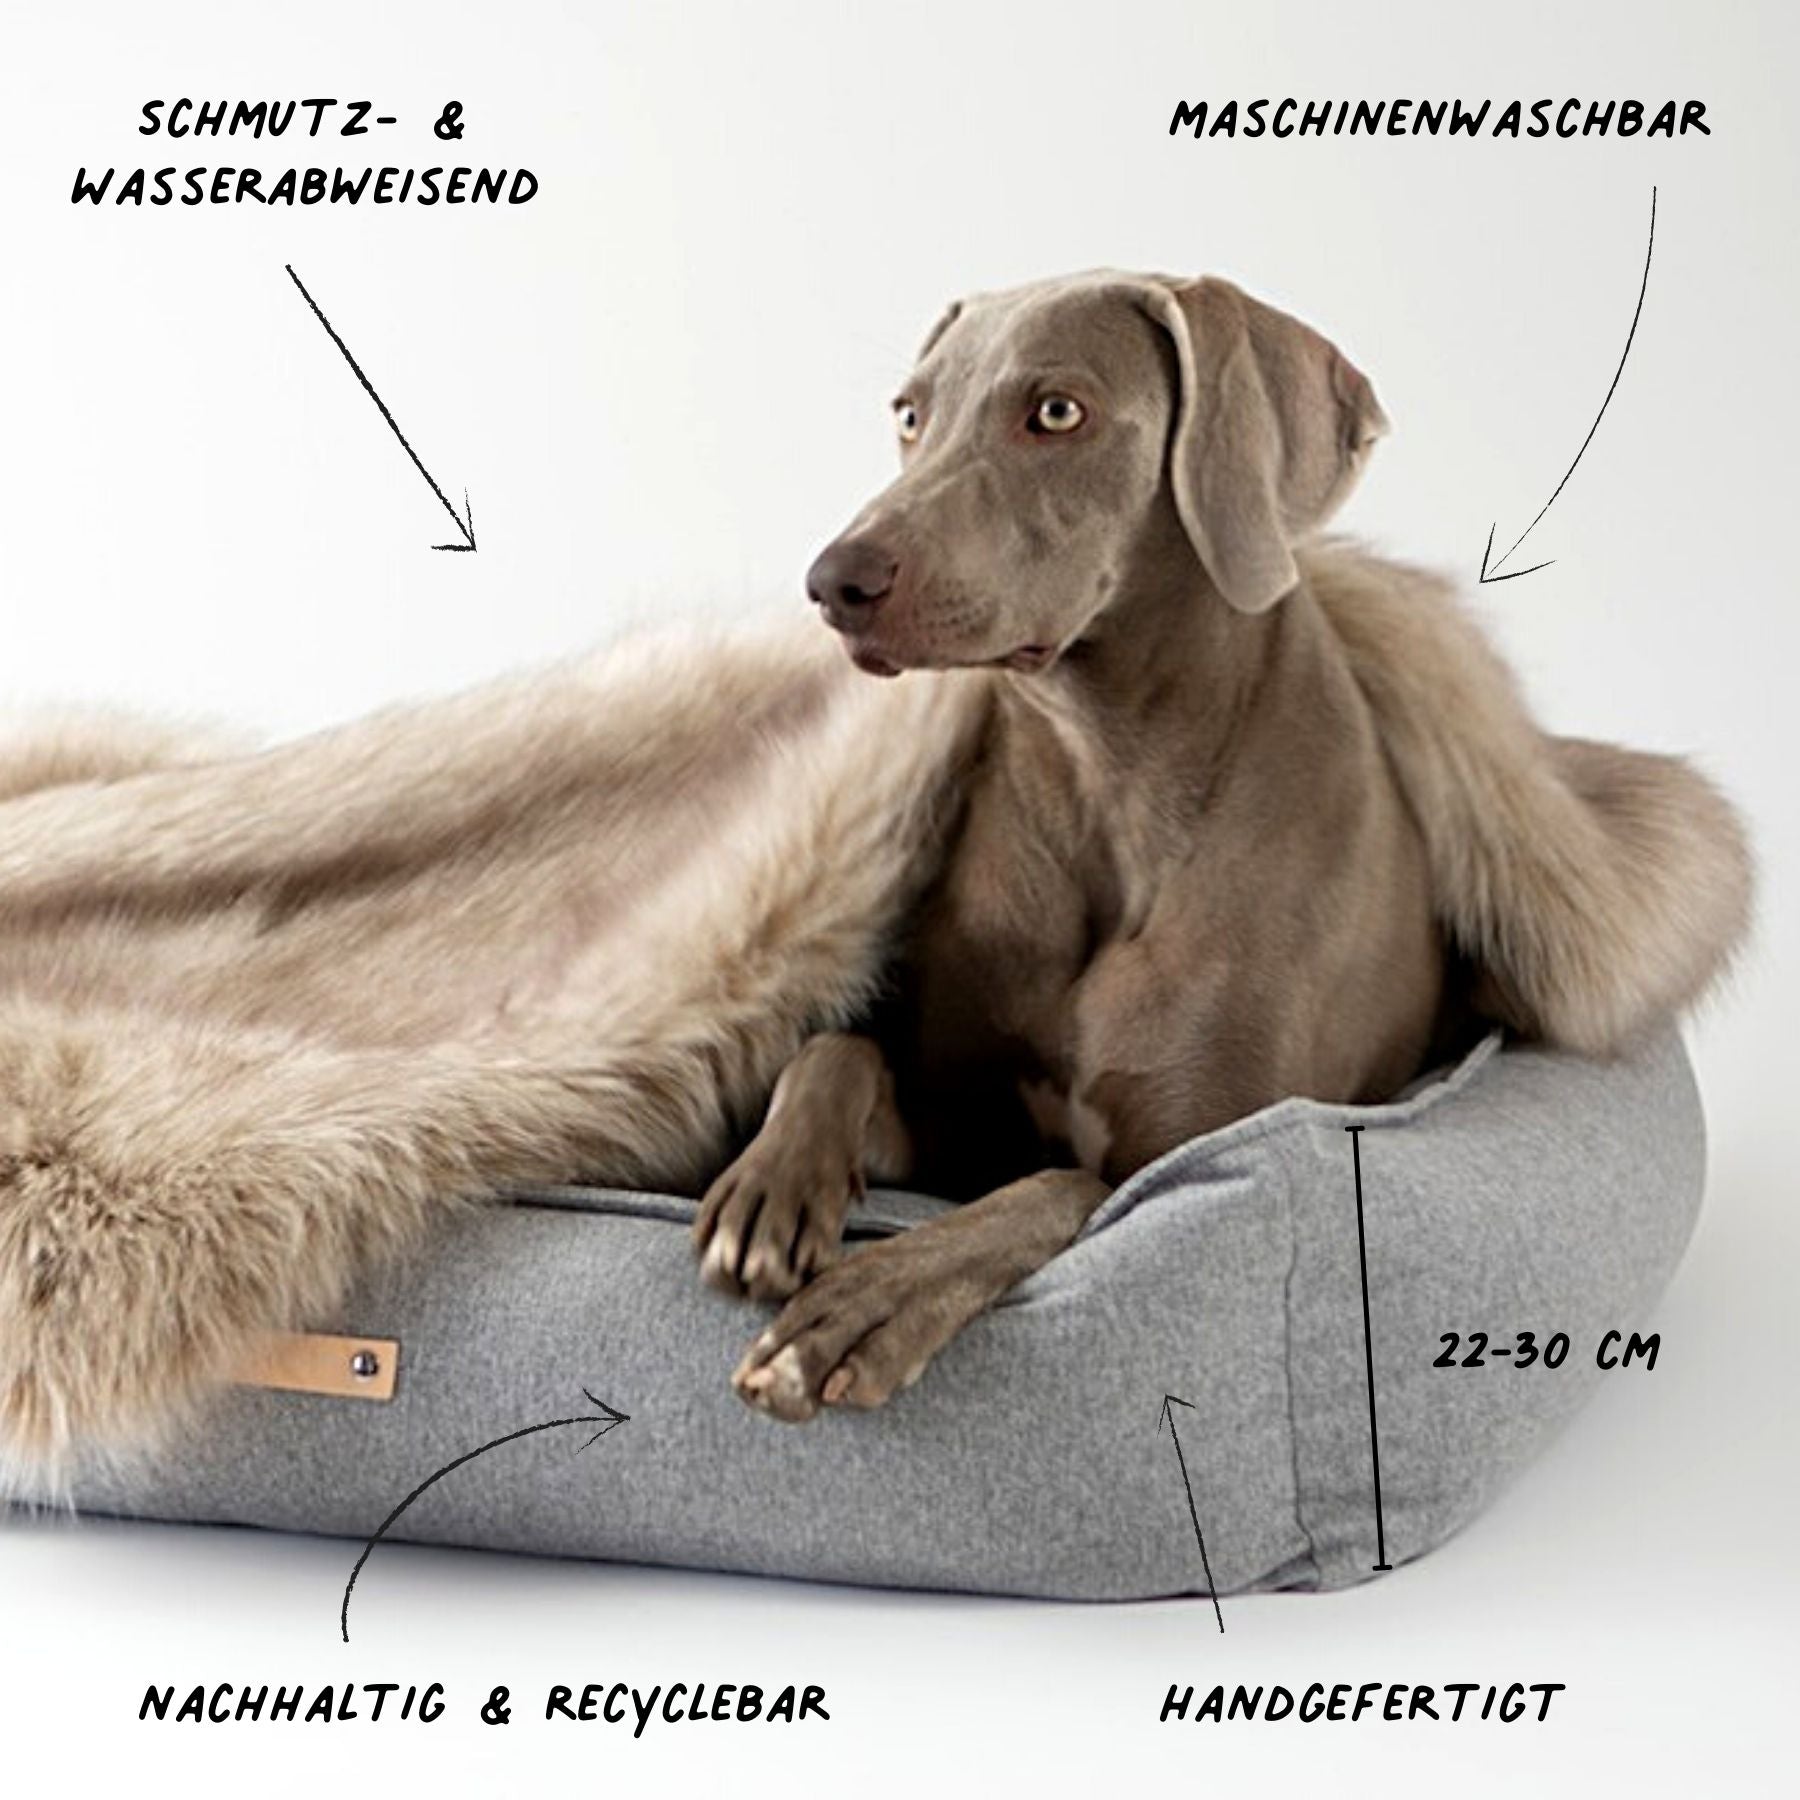 Dieses Bild zeigt ein Hundebett im nordischen Stil von LABBVENN. Es heißt Møvik und ist in drei Farben und drei Größen erhältlich. Das Bett wird für deinen Hund in sorgfältiger Handarbeit hergestellt, ist nachhaltig und sehr luxoriös. Dies ist die Farbe Grey-Grau.